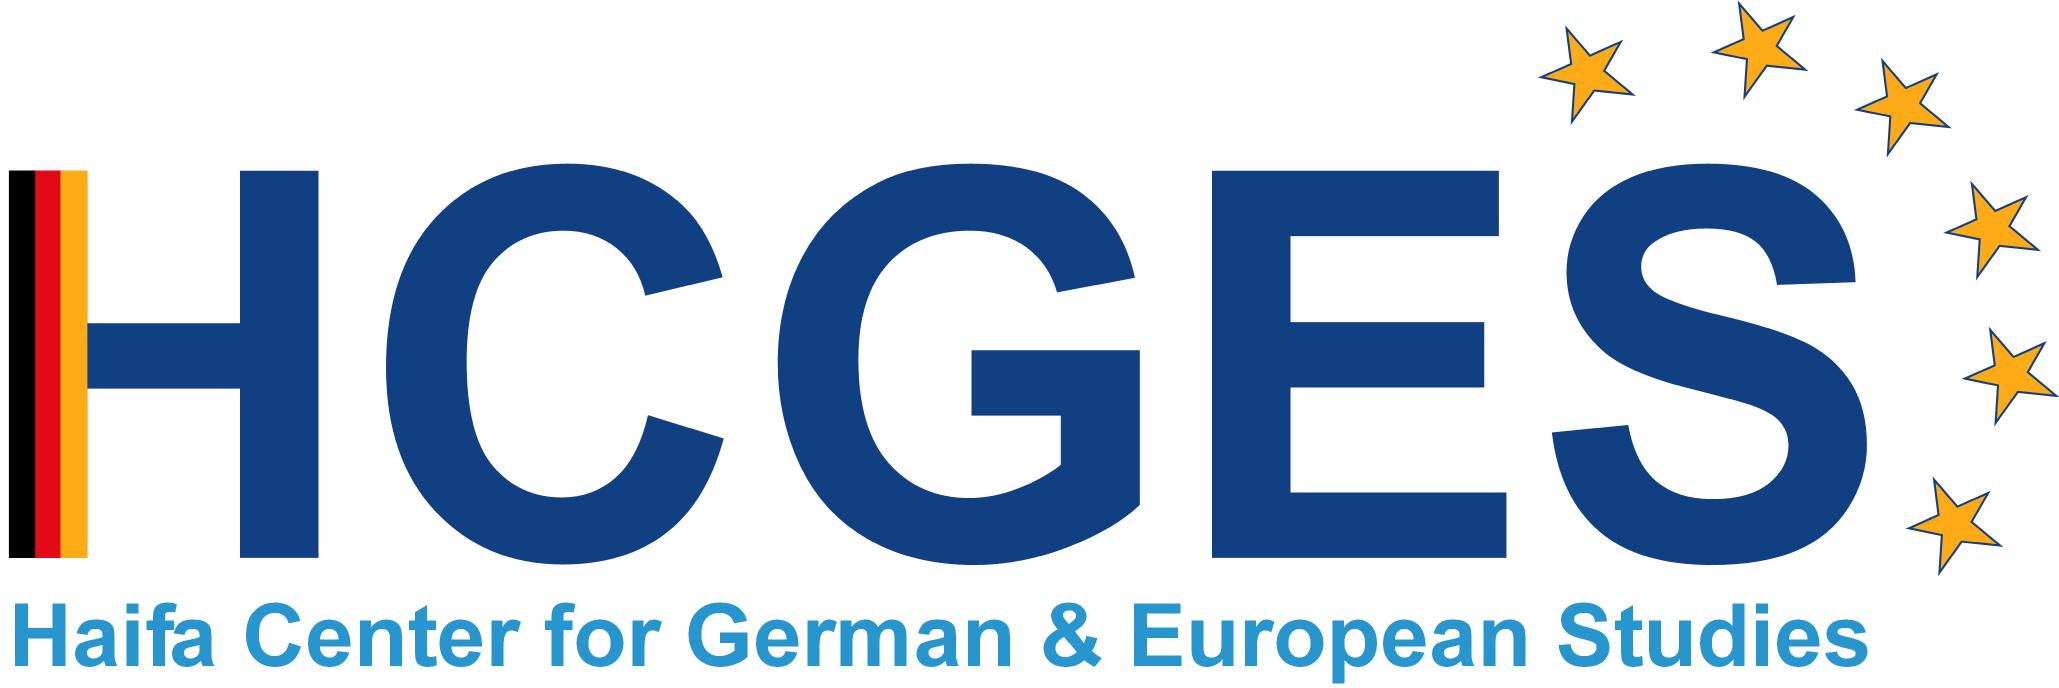 HCGES logo color